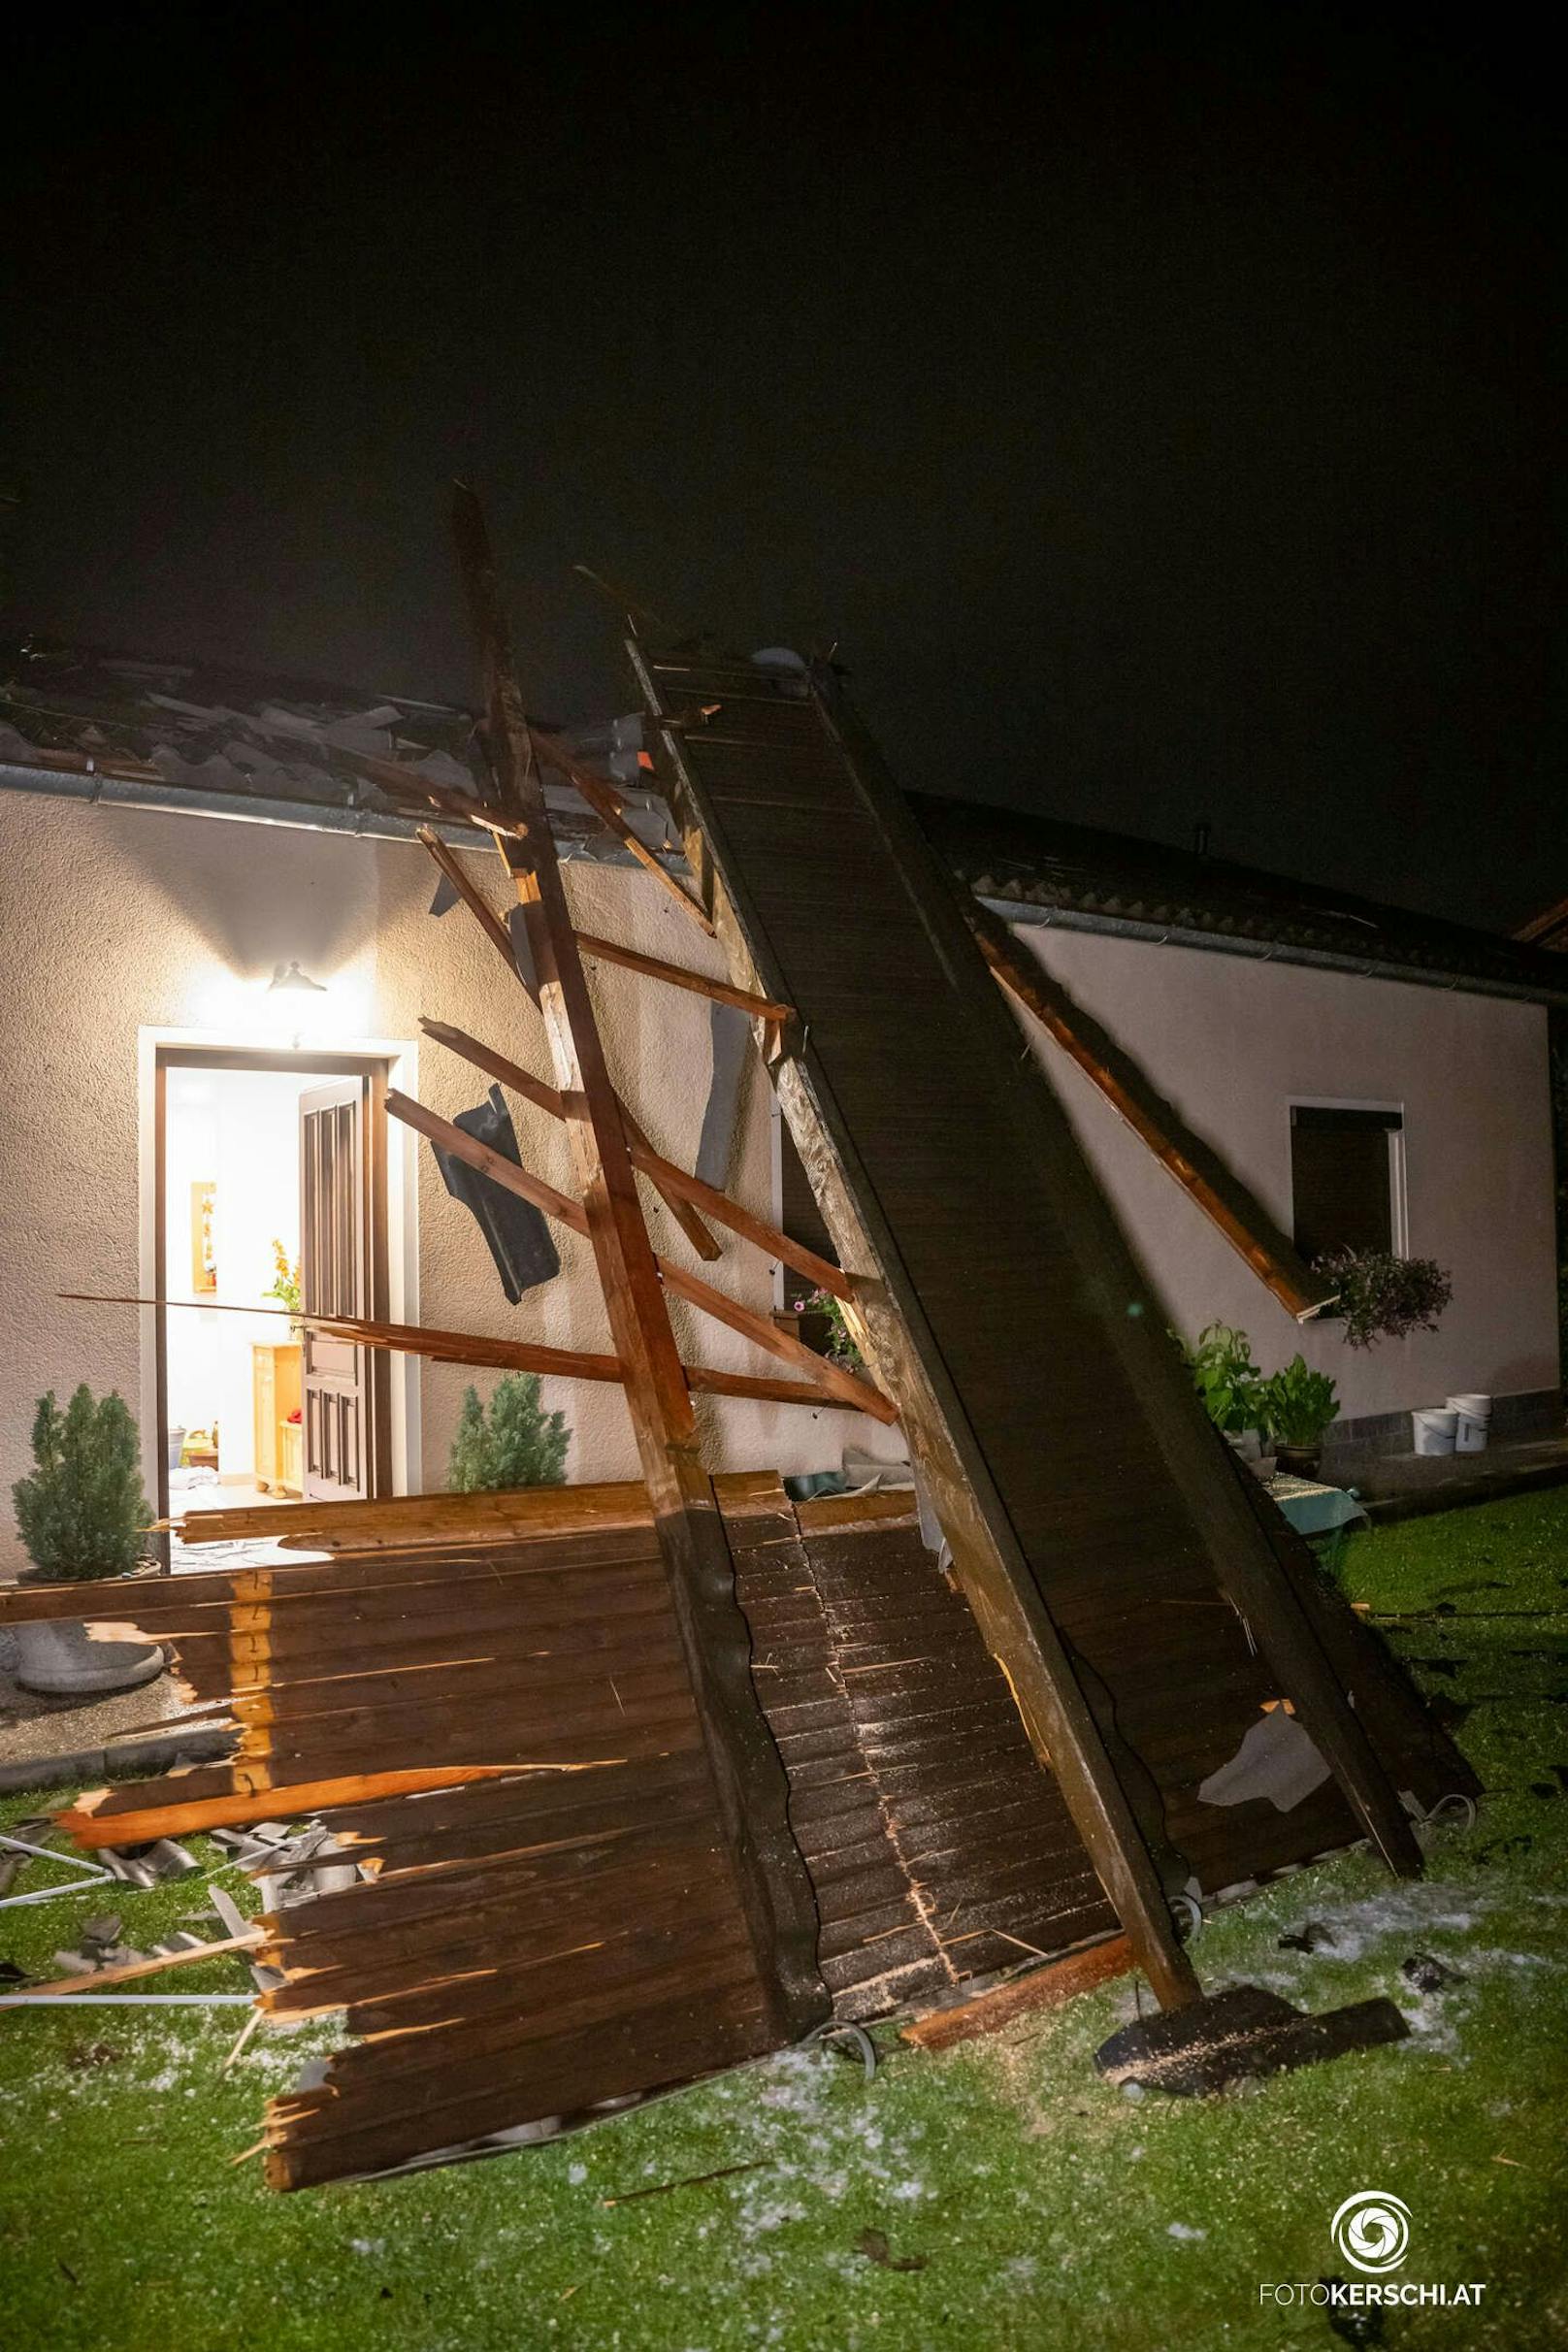 Schwere Unwetter mit riesigen Hagelkörnern haben für mehrere Einsätze der Feuerwehr gesorgt und massive Schäden in Österreich angerichtet.